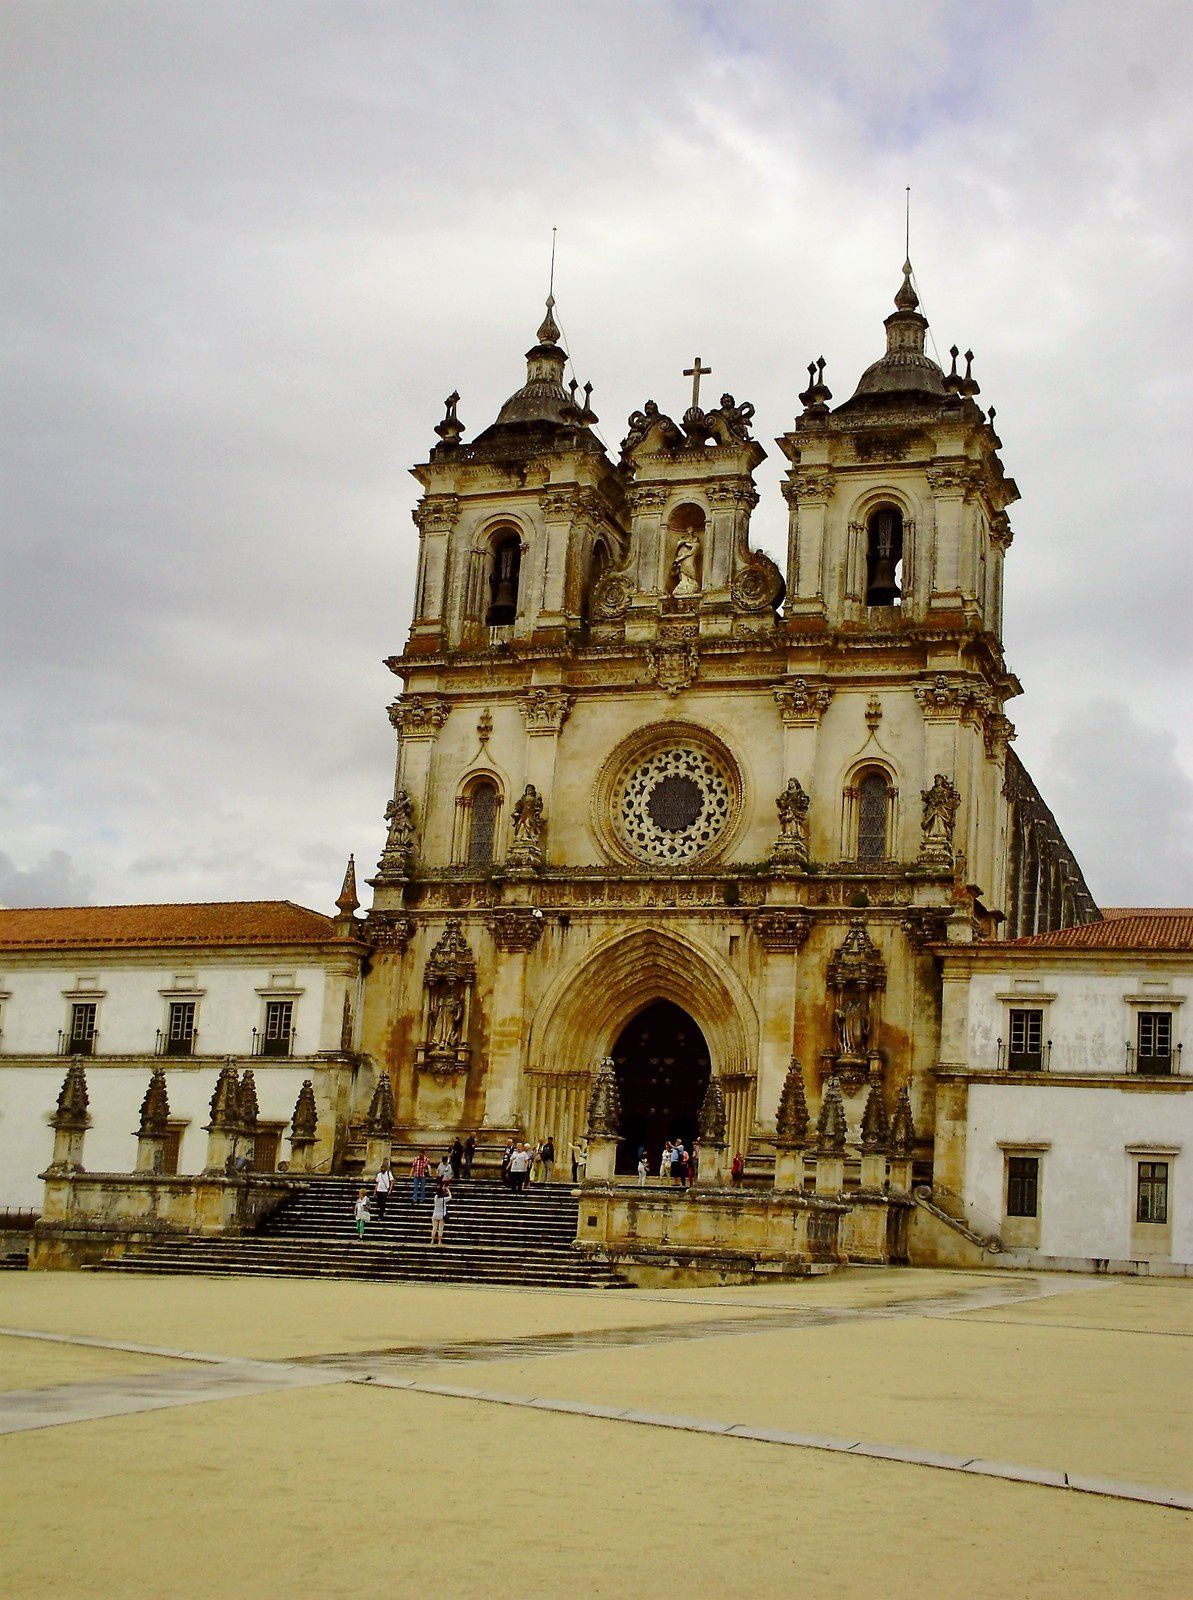 Goldwing - notre voyage au Portugal en 15 jours-7